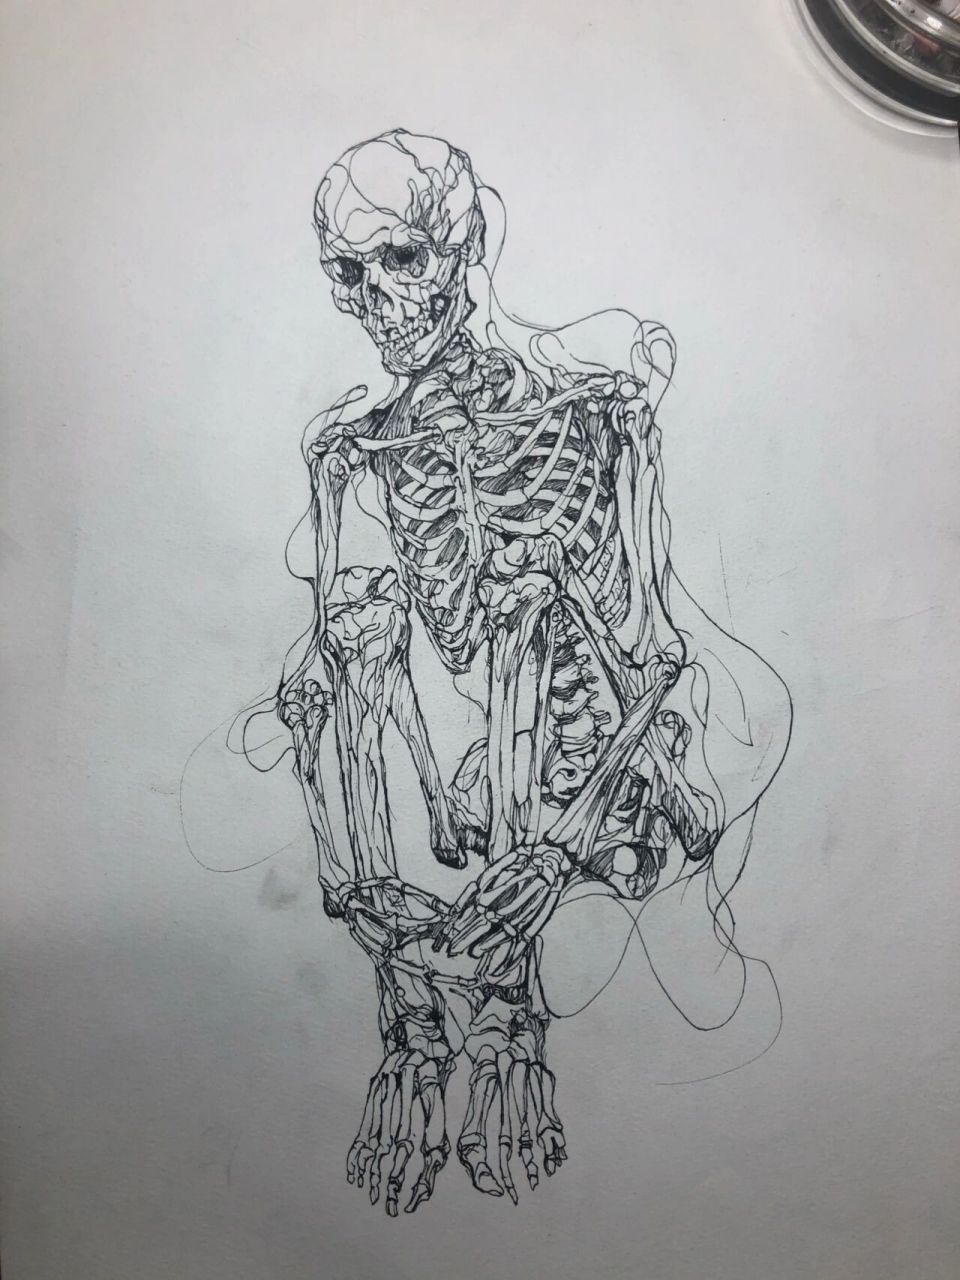 人体骨骼结构绘画96 暂且叫它赤裸的孤独吧,如人饮水冷暖自知